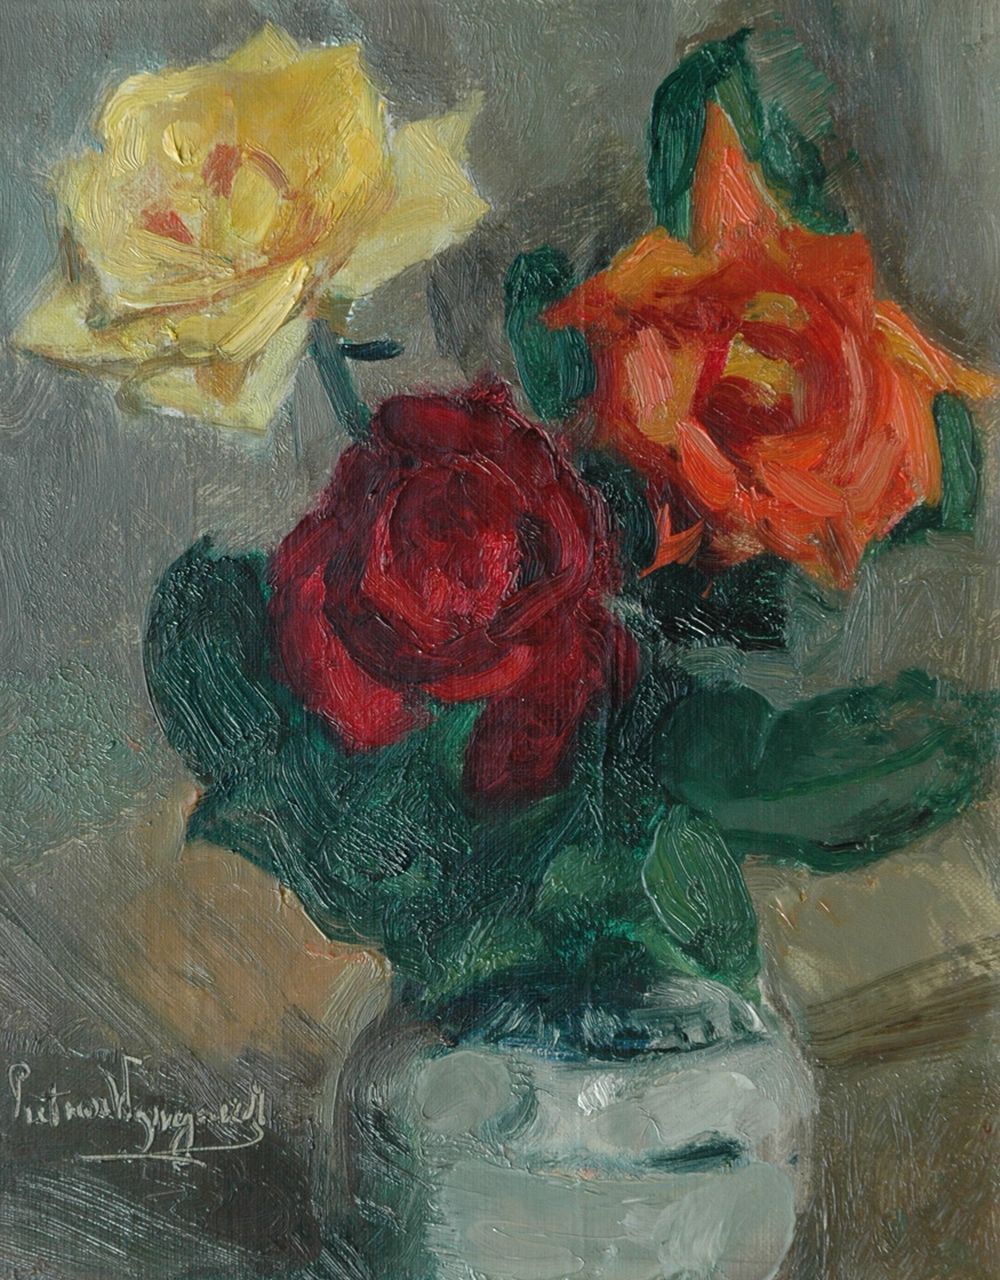 Wijngaerdt P.T. van | Petrus Theodorus 'Piet' van Wijngaerdt, Roses in a Cologne pot, Öl auf Leinwand 30,8 x 24,8 cm, signed l.l.